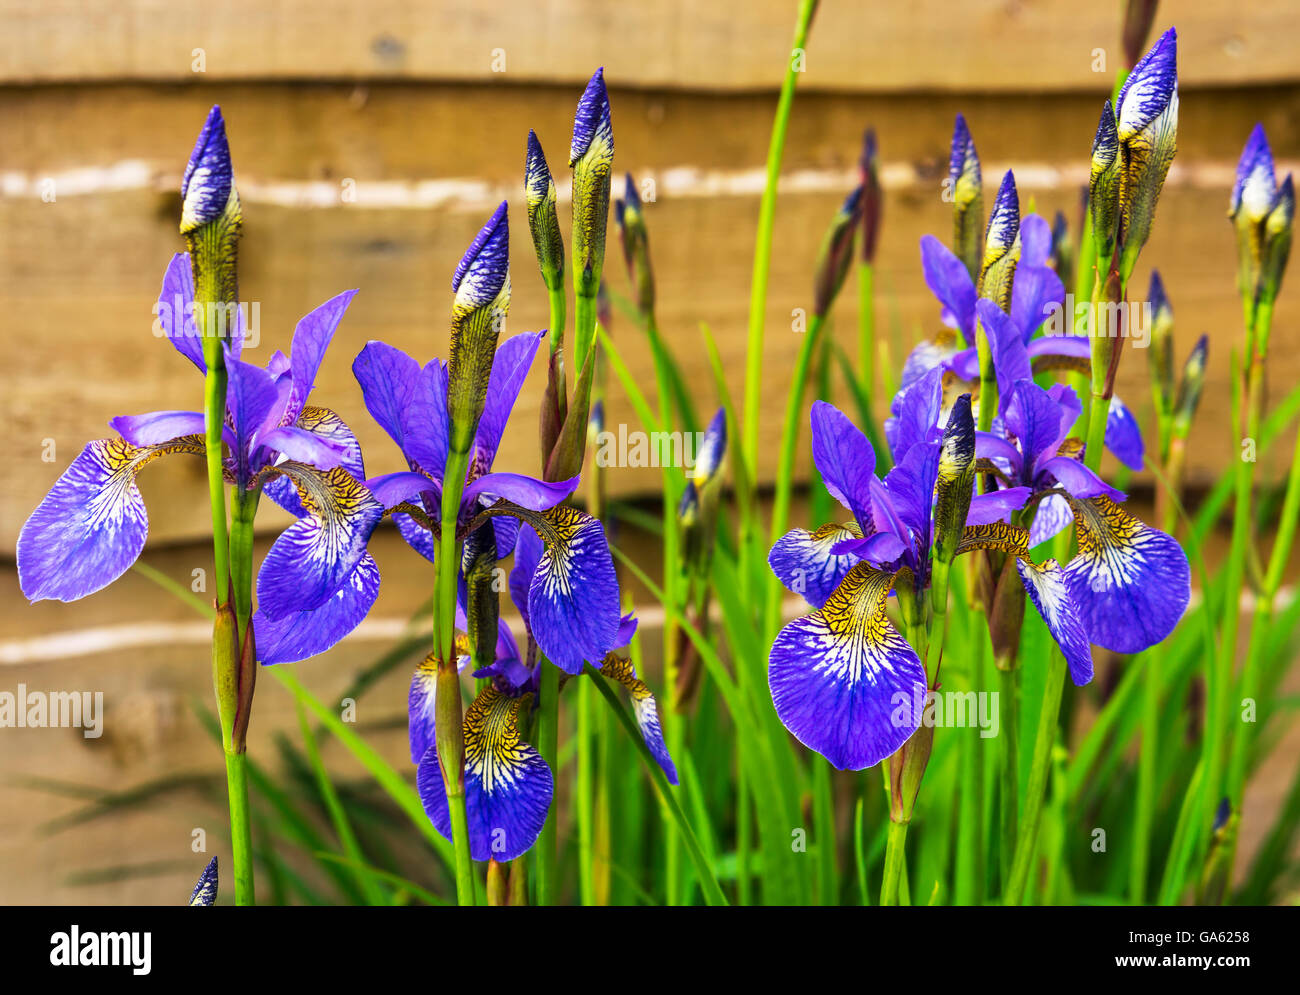 Blue Iris Sibirica in a garden. Stock Photo